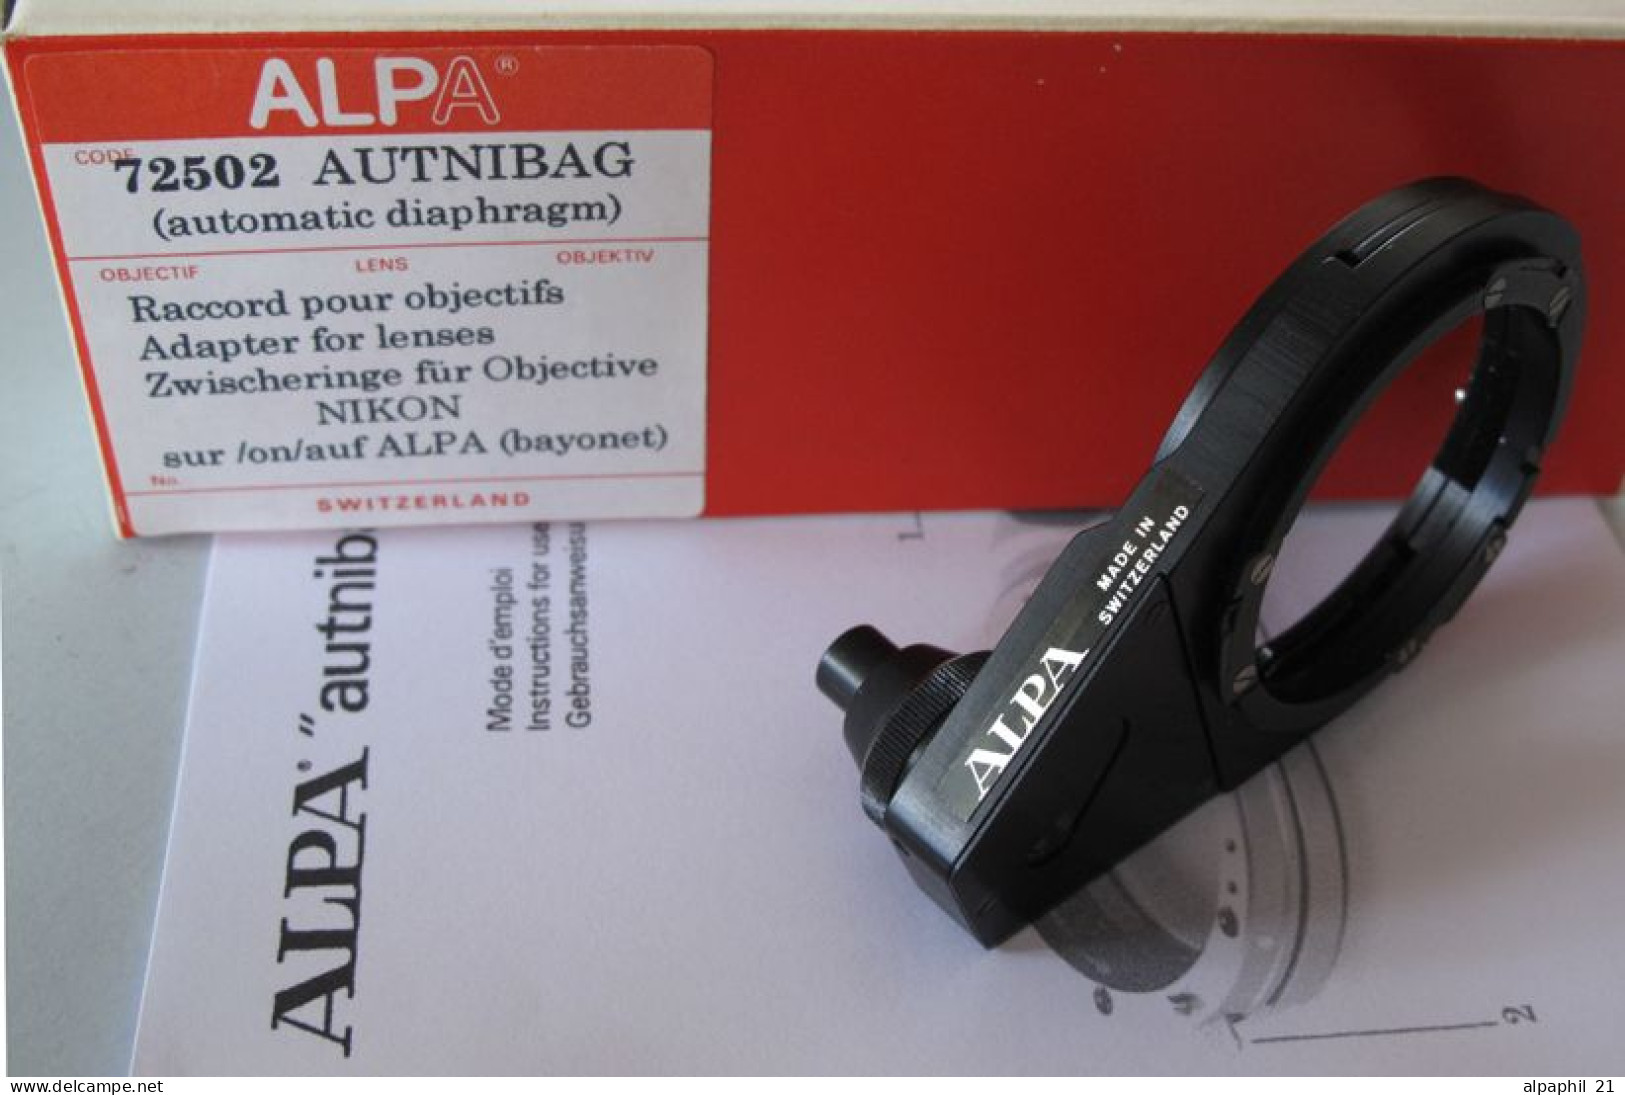 Alpa Autnibag "72502" - Matériel & Accessoires